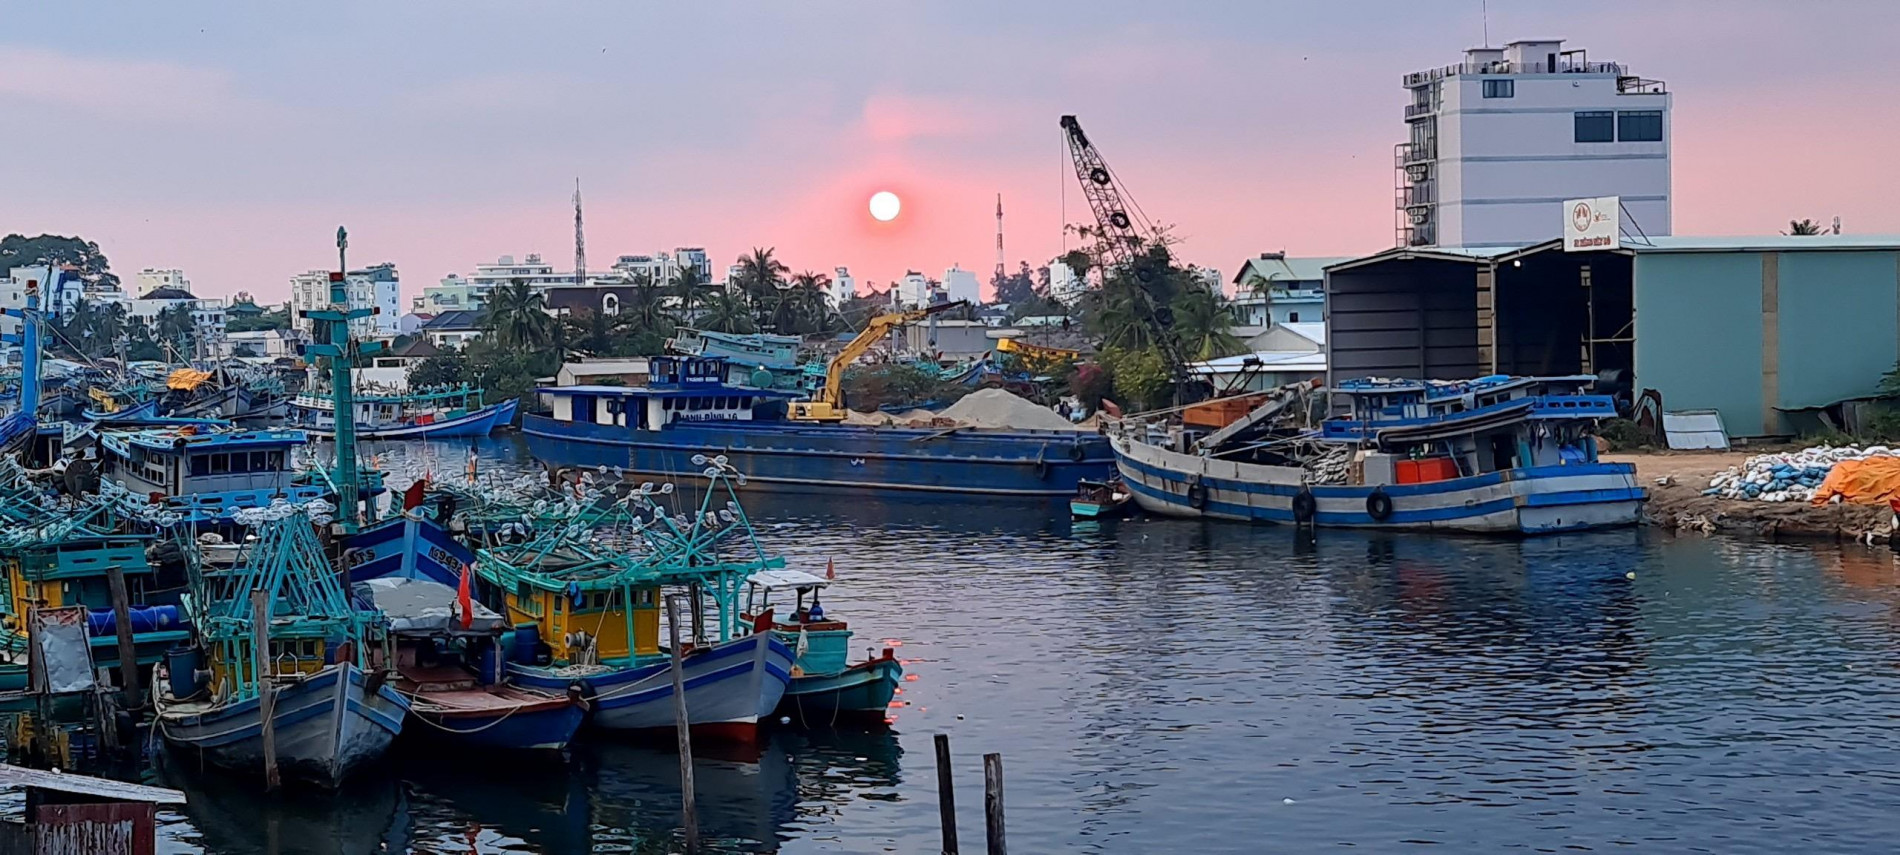 Phú Quốc: Sông Dương Đông ô nhiễm nghiêm trọng, chính quyền tìm giải pháp cải thiện - ảnh 1